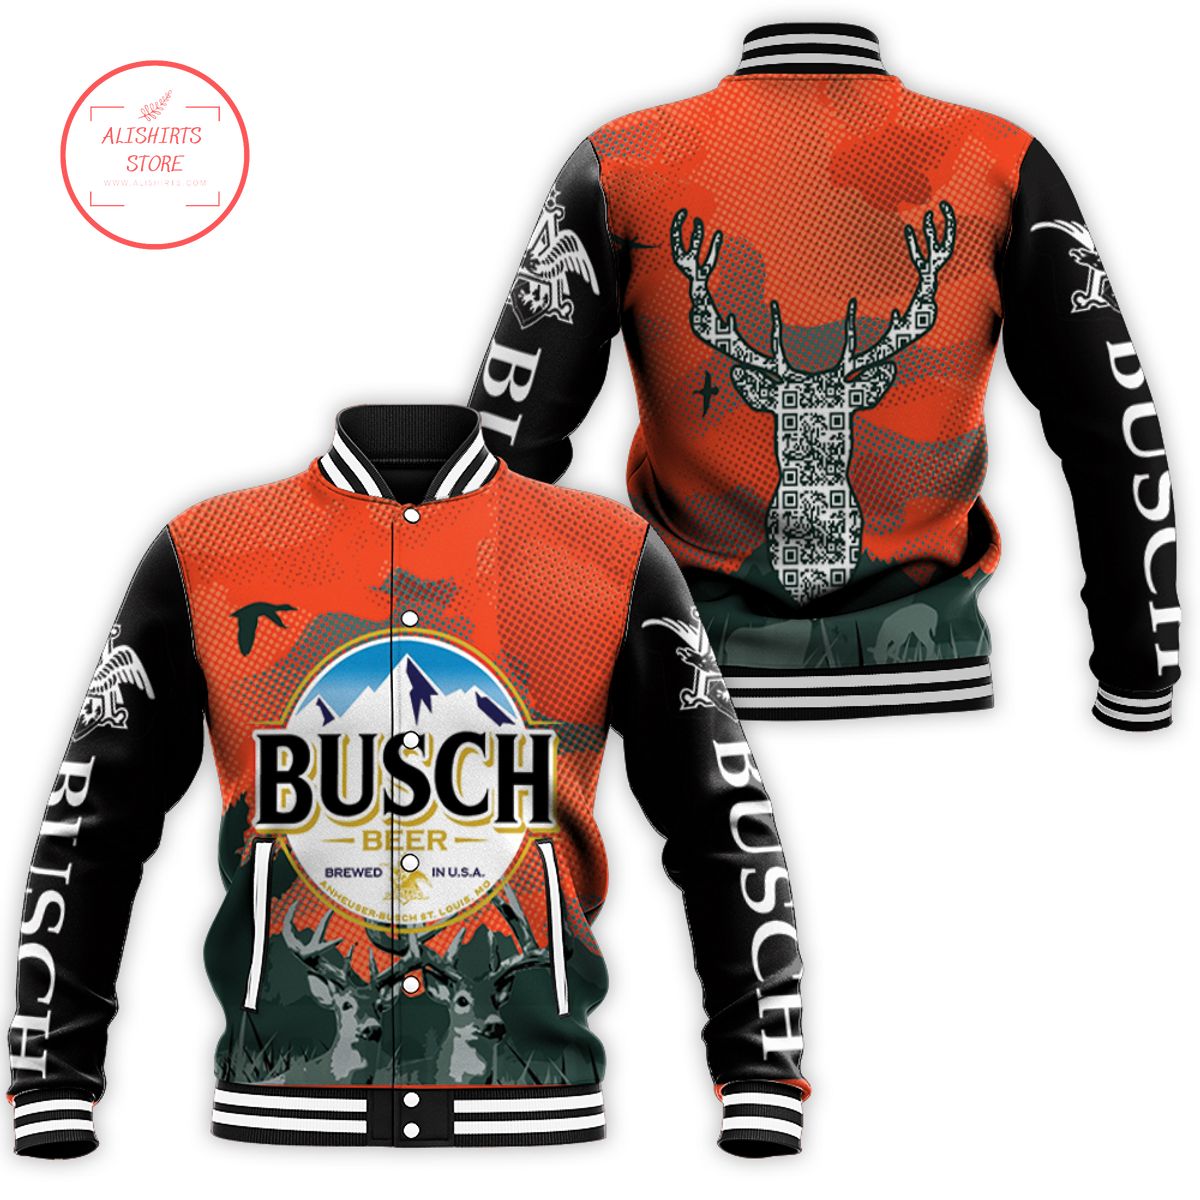 Busch beer logo and deer head varsity jacket